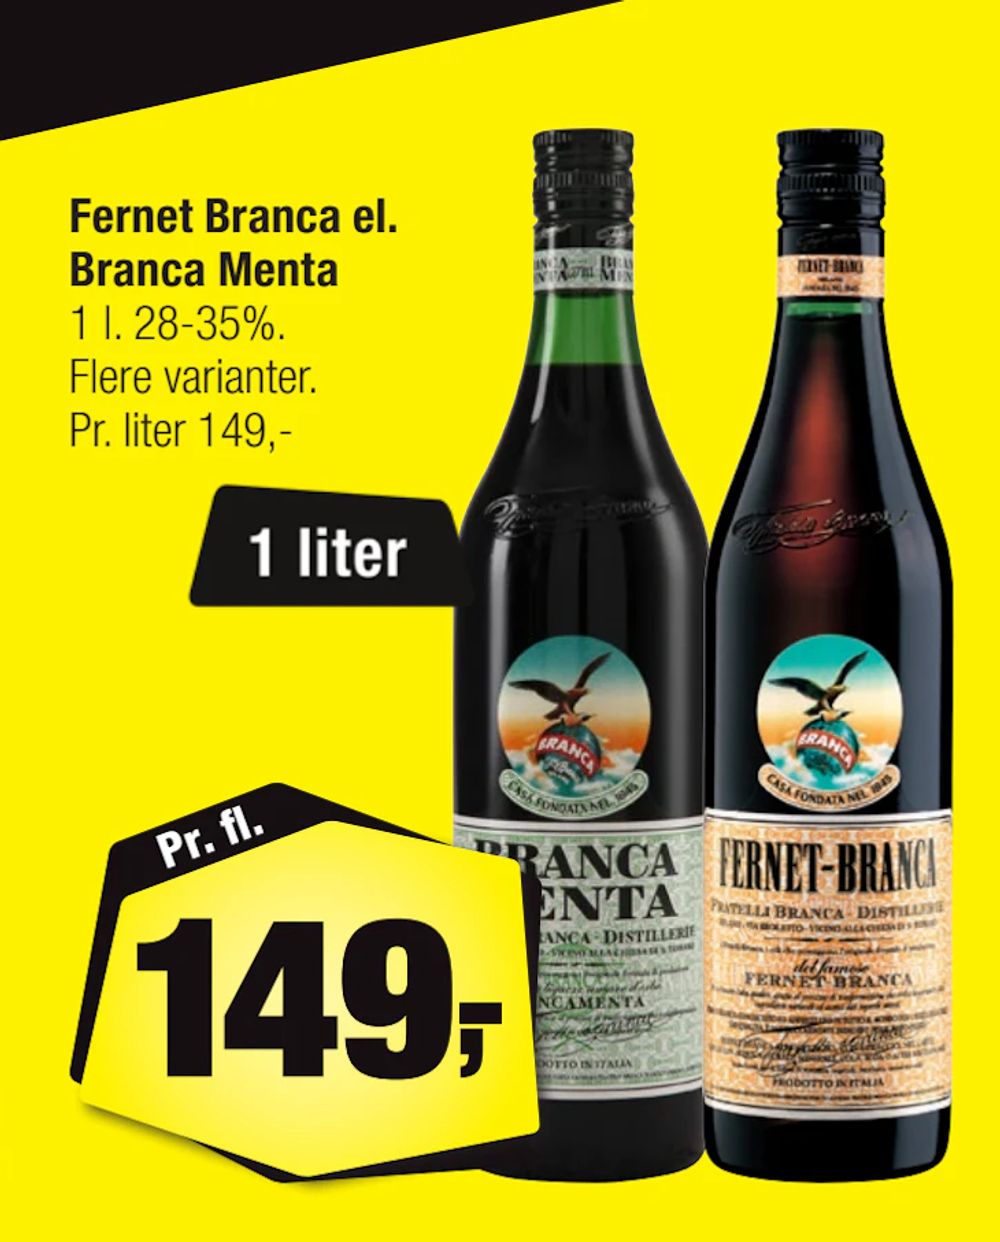 Tilbud på Fernet Branca el. Branca Menta fra Calle til 149 kr.